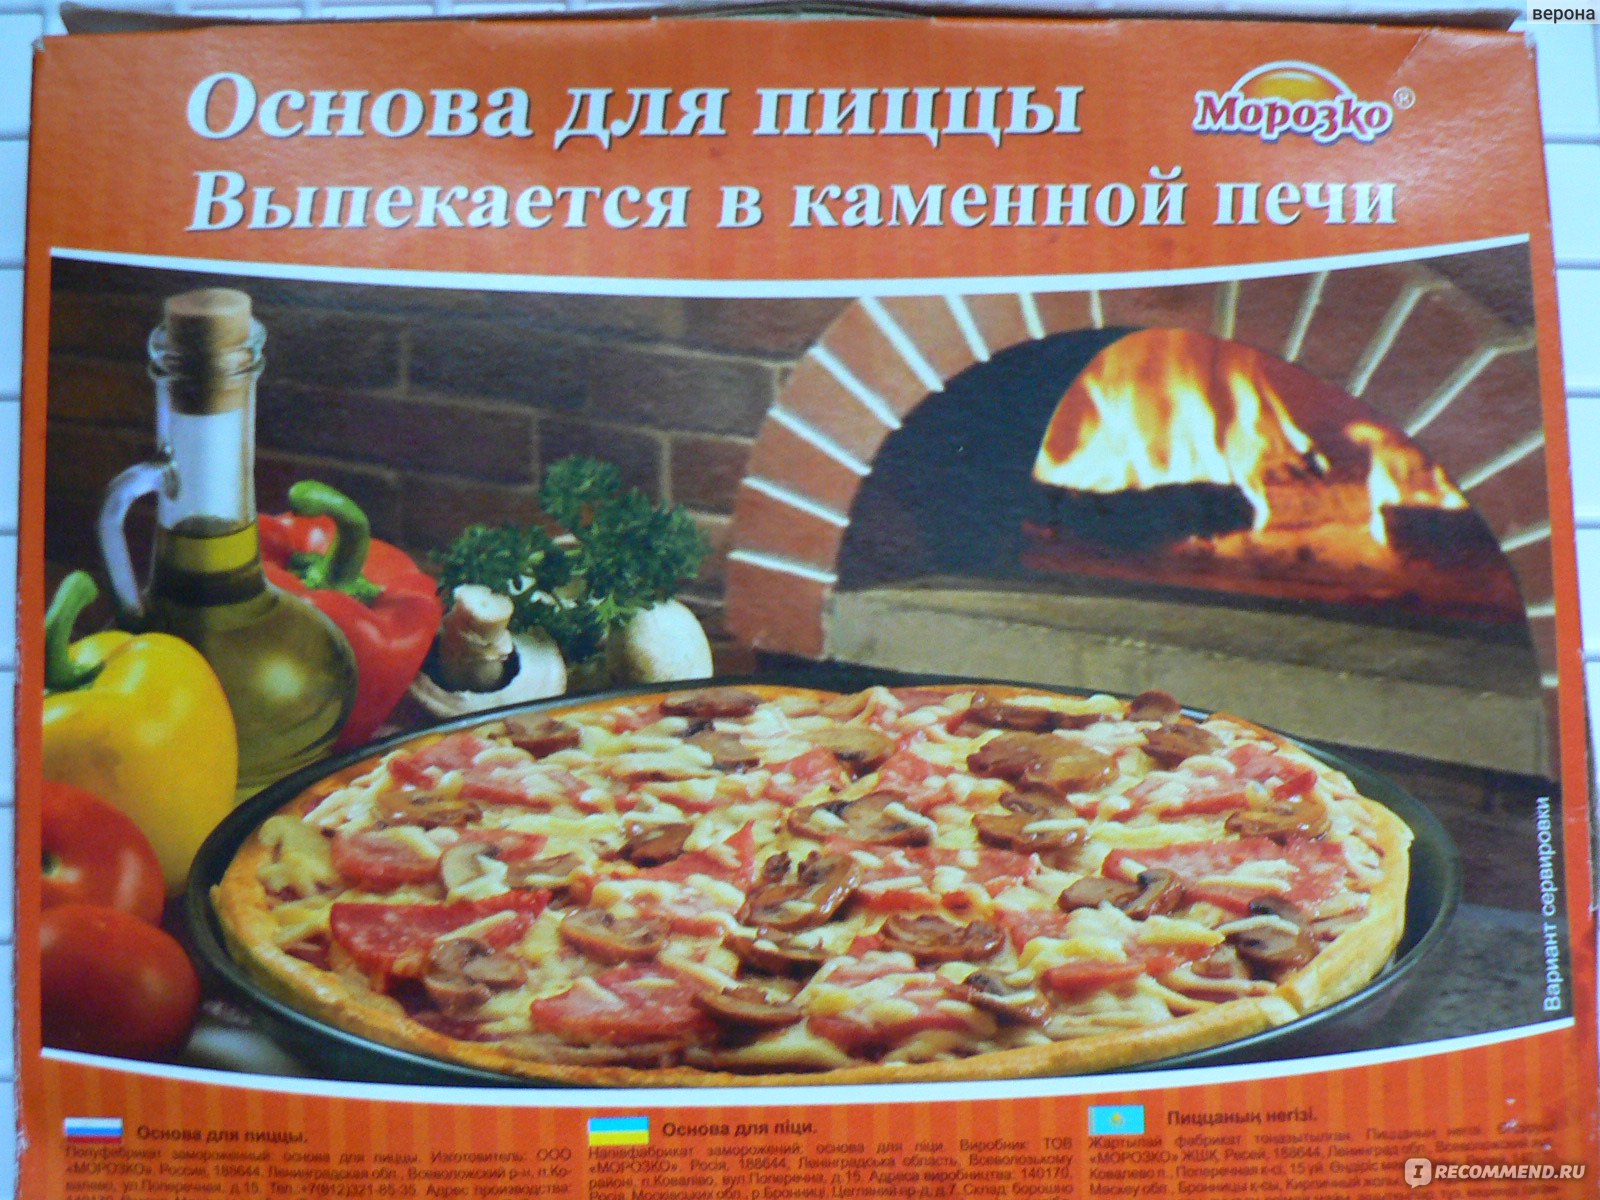 Пицца на основе для пиццы морозко